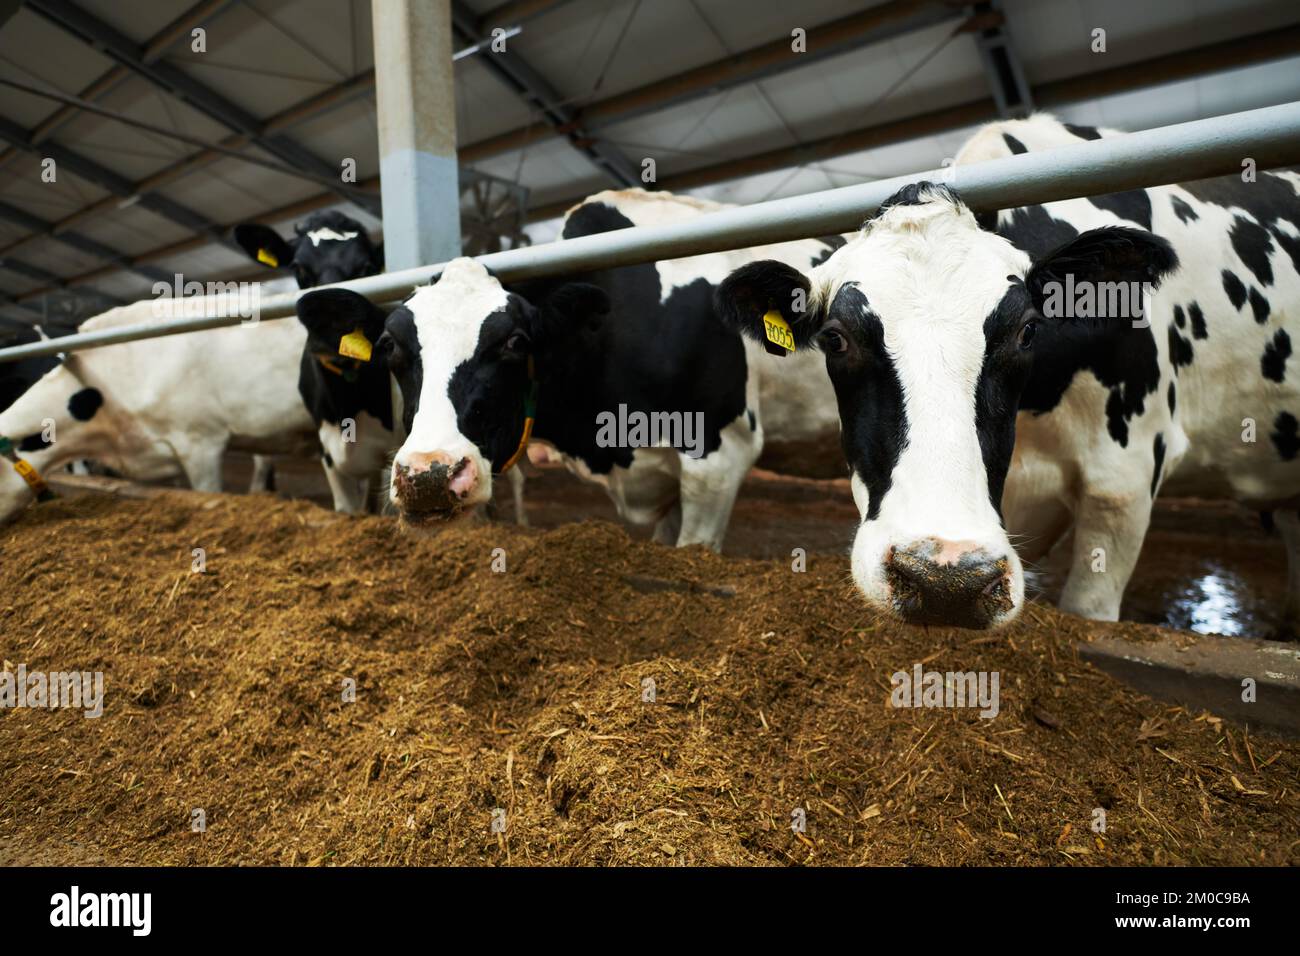 Gruppo di vacche da latte in bianco e nero in piedi in vacchetta davanti al foraggio e mangiare mentre uno di loro guarda la macchina fotografica Foto Stock